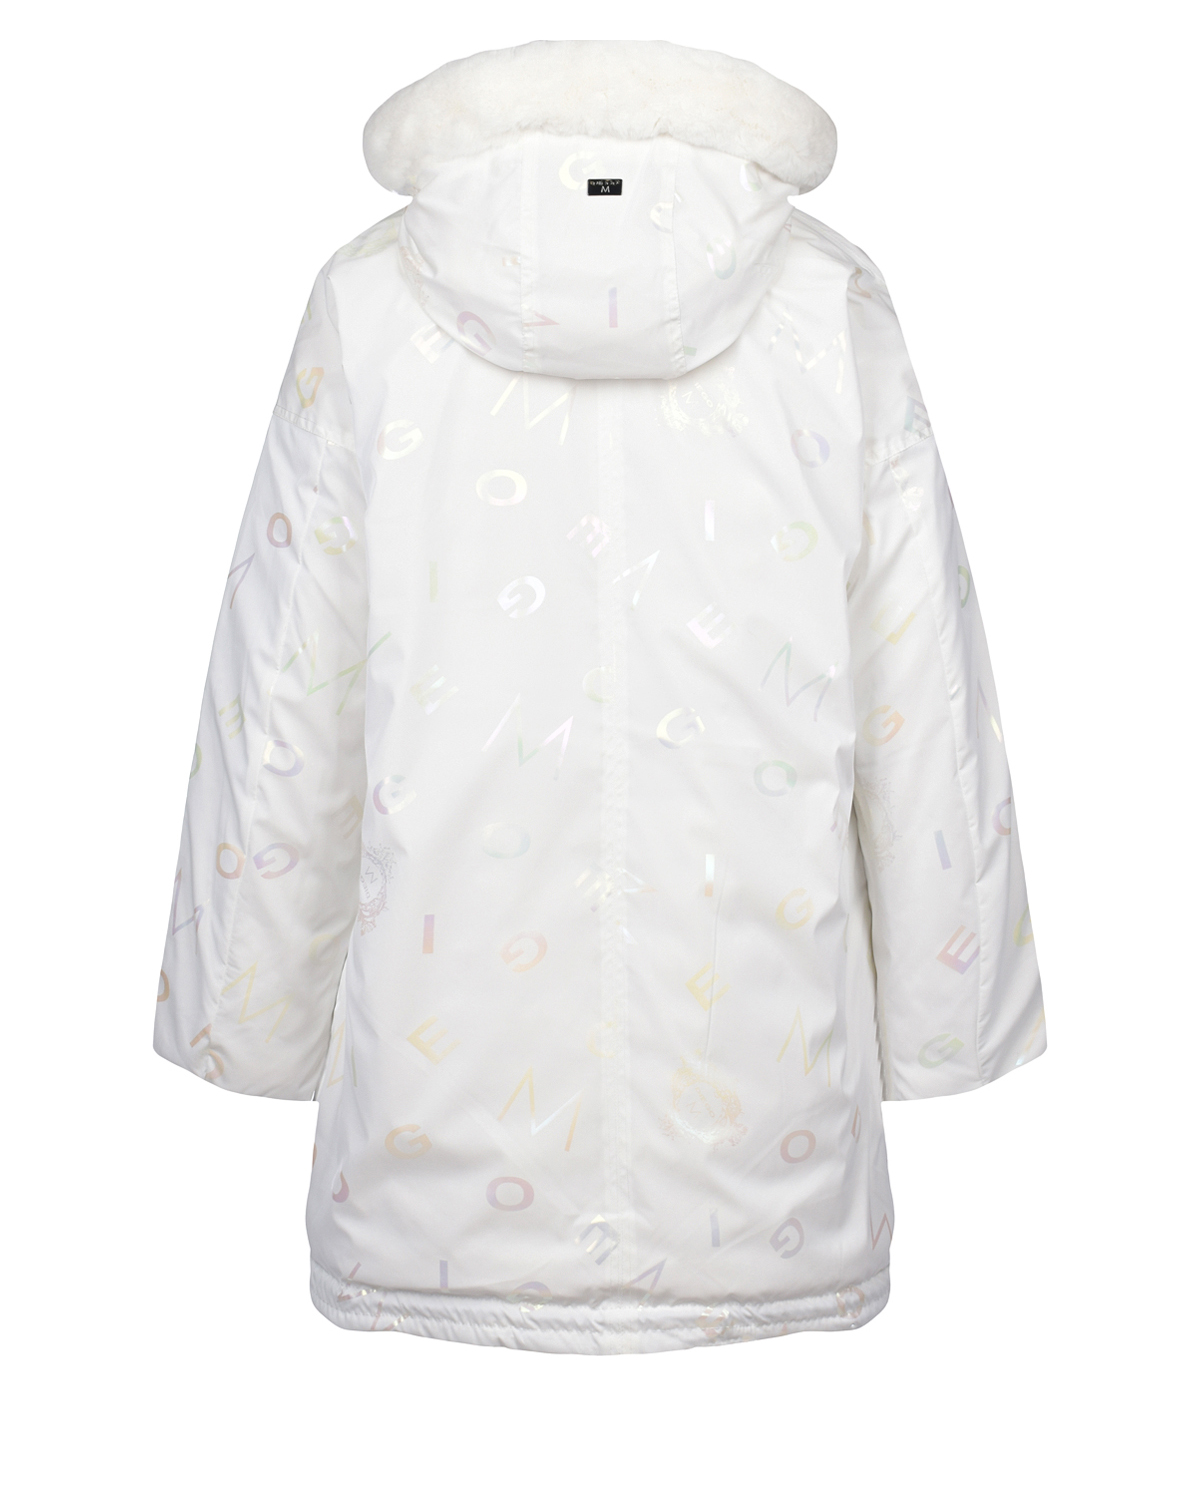 Двухсторонняя куртка с меховой отделкой на капюшоне Diego M, размер 46, цвет белый - фото 3